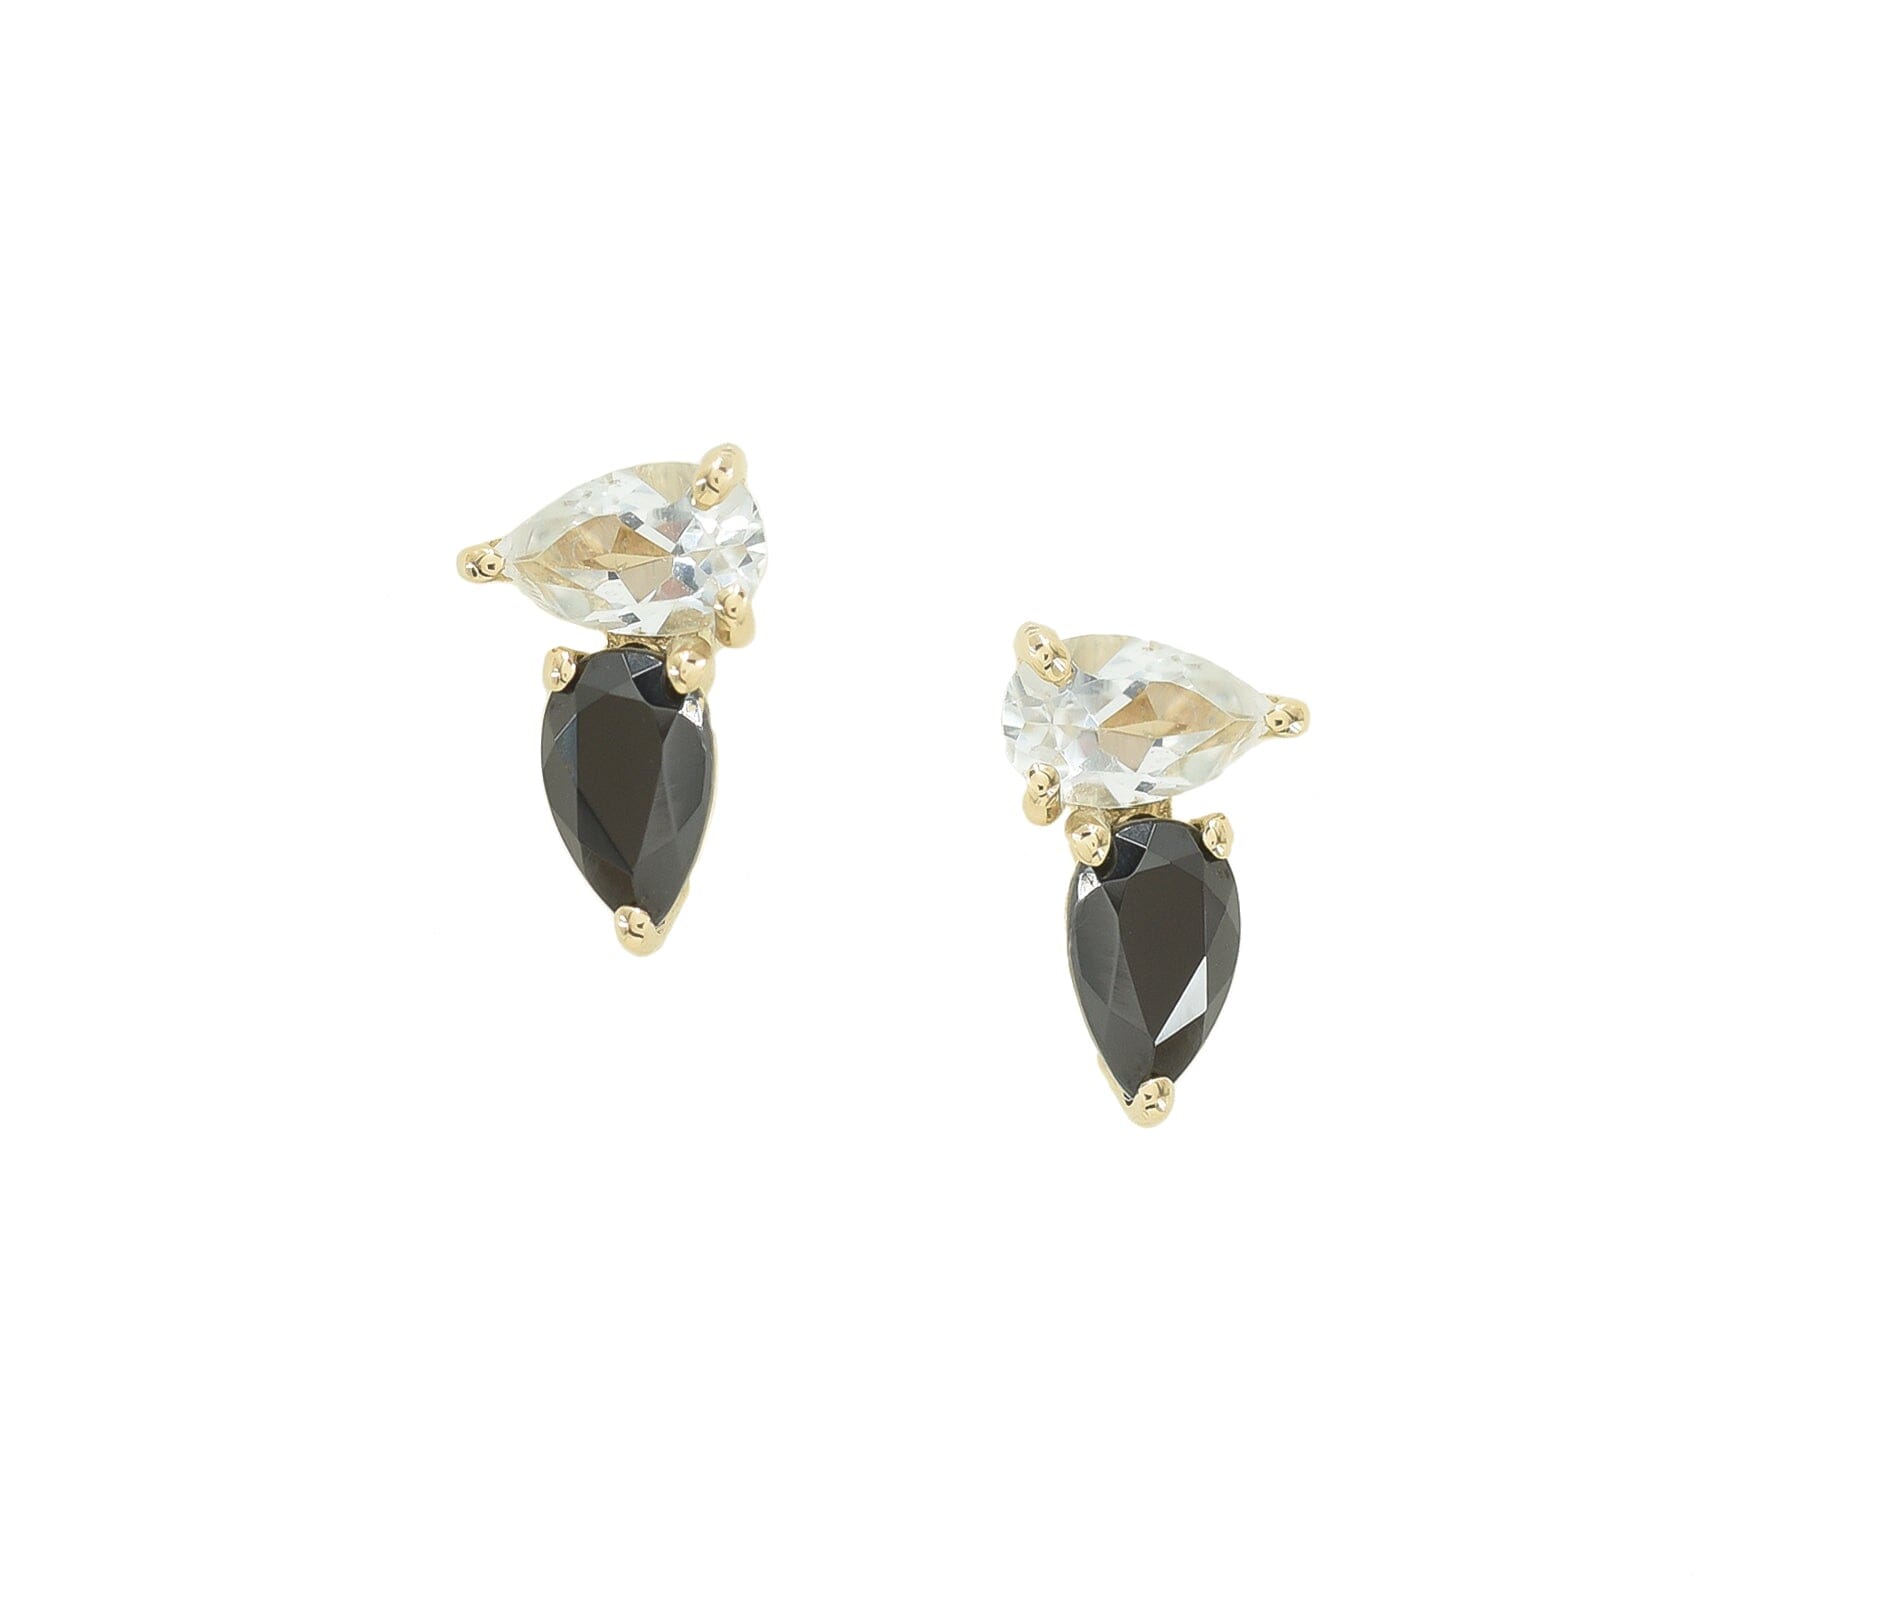 Mini White and Black Cookie Studs Earrings - BONDEYE JEWELRY ®